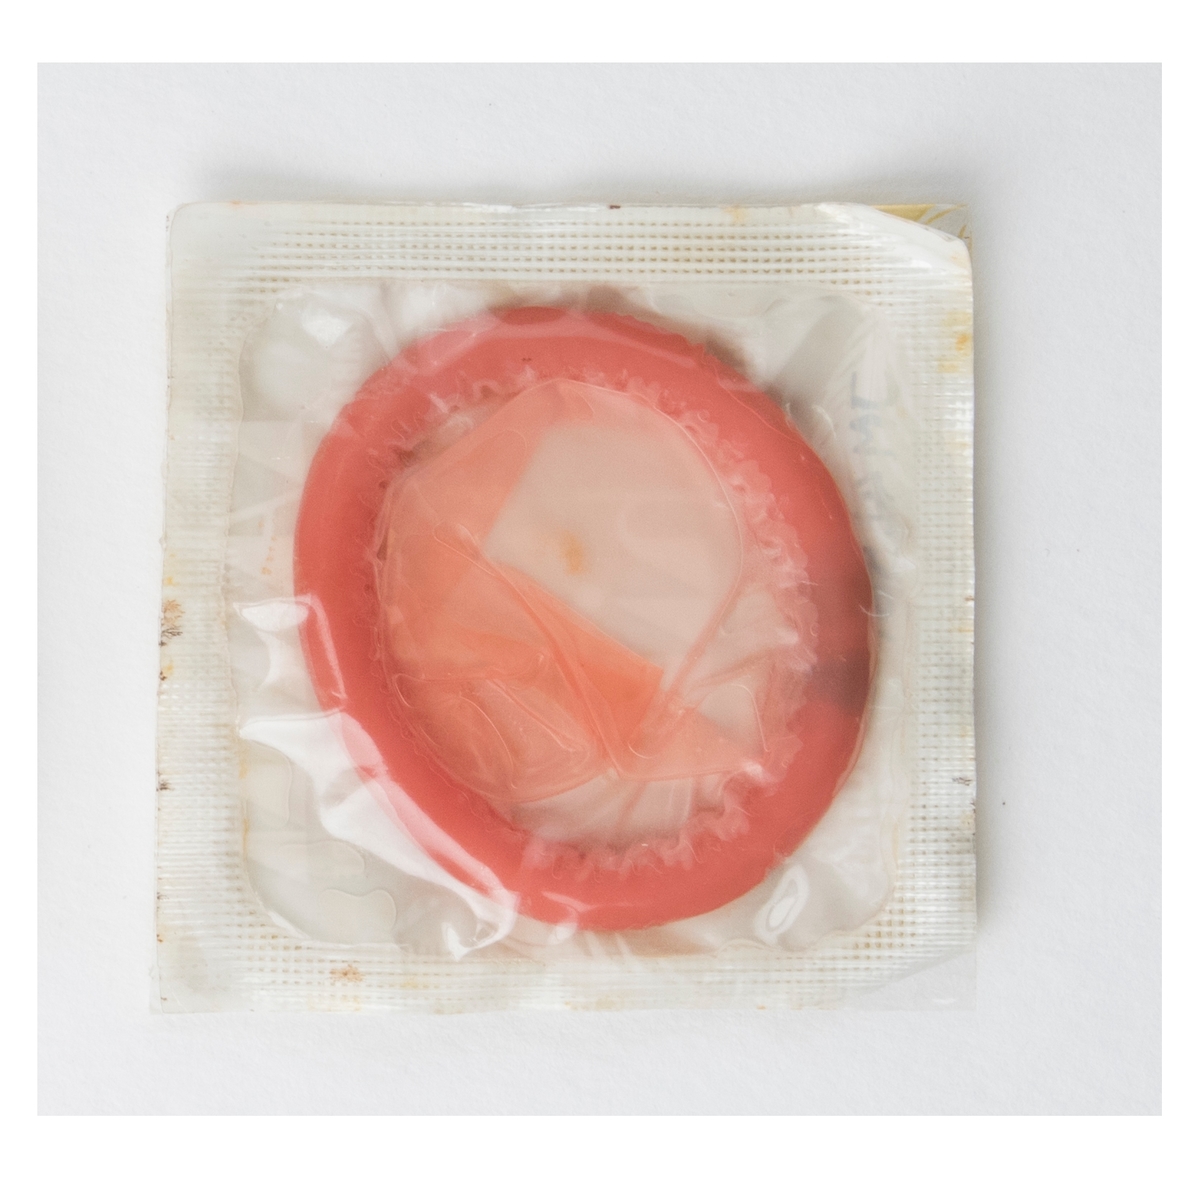 Rosa ihoprullad kondom i förpackning.